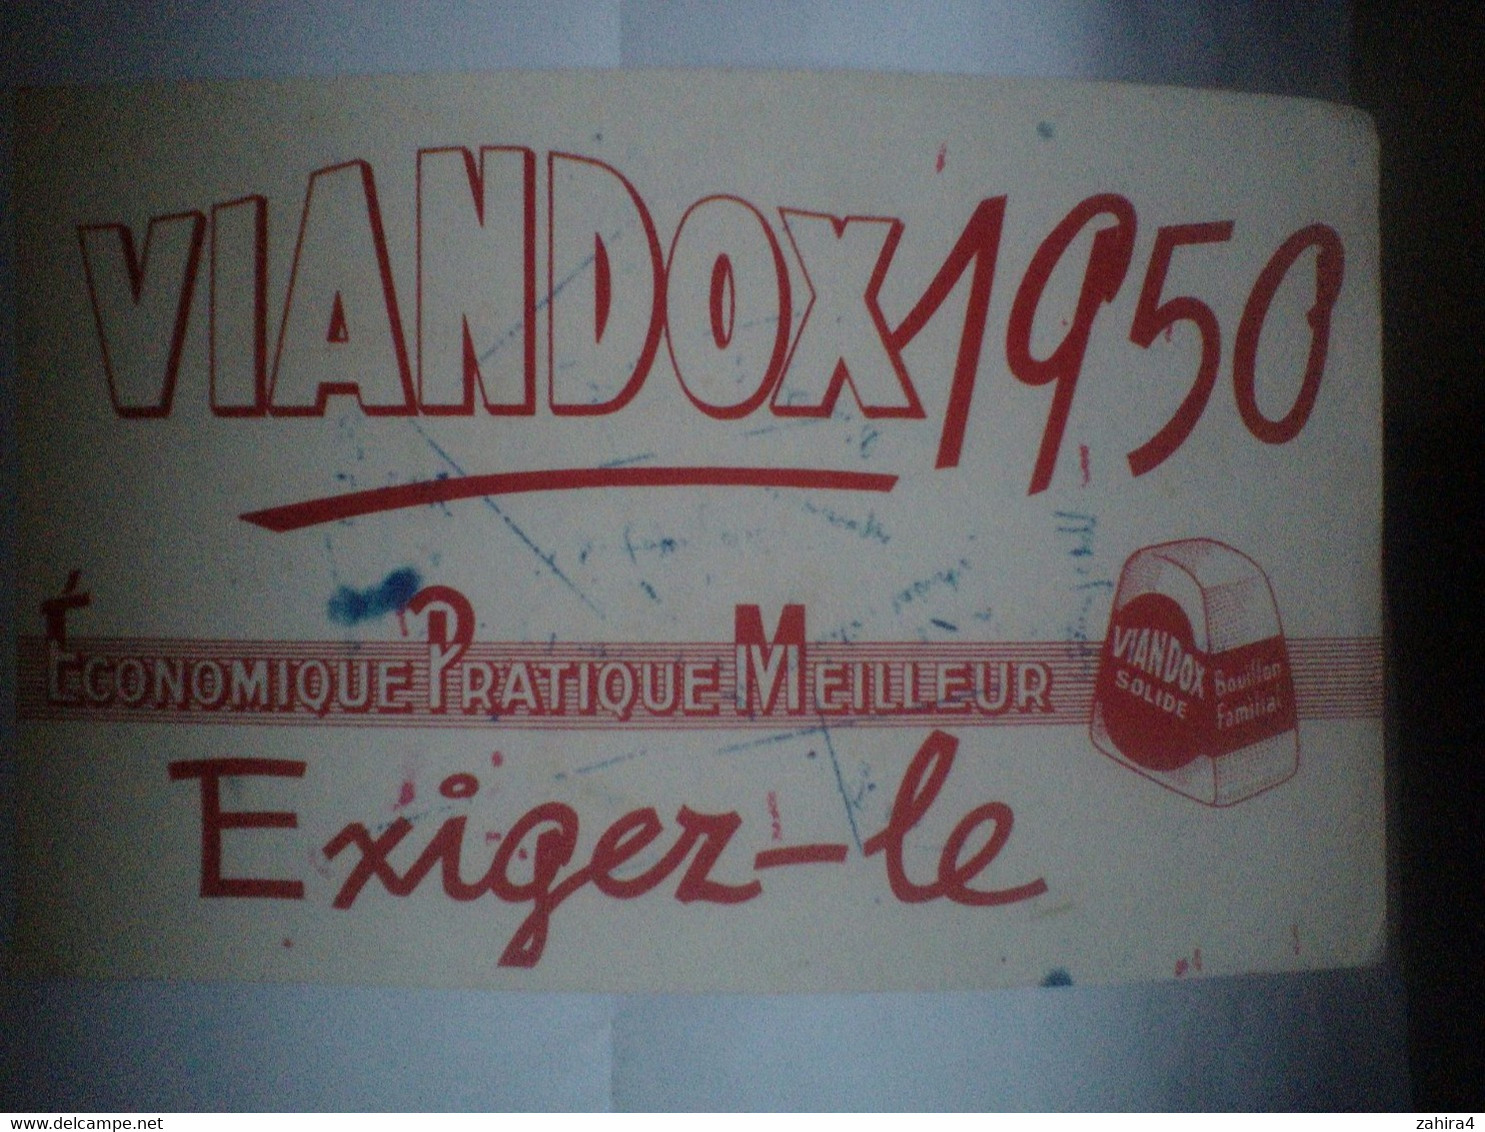 Viandox 1950 - Economique Pratique Meilleur - Exiger-le - Bouillon Familial - Potages & Sauces